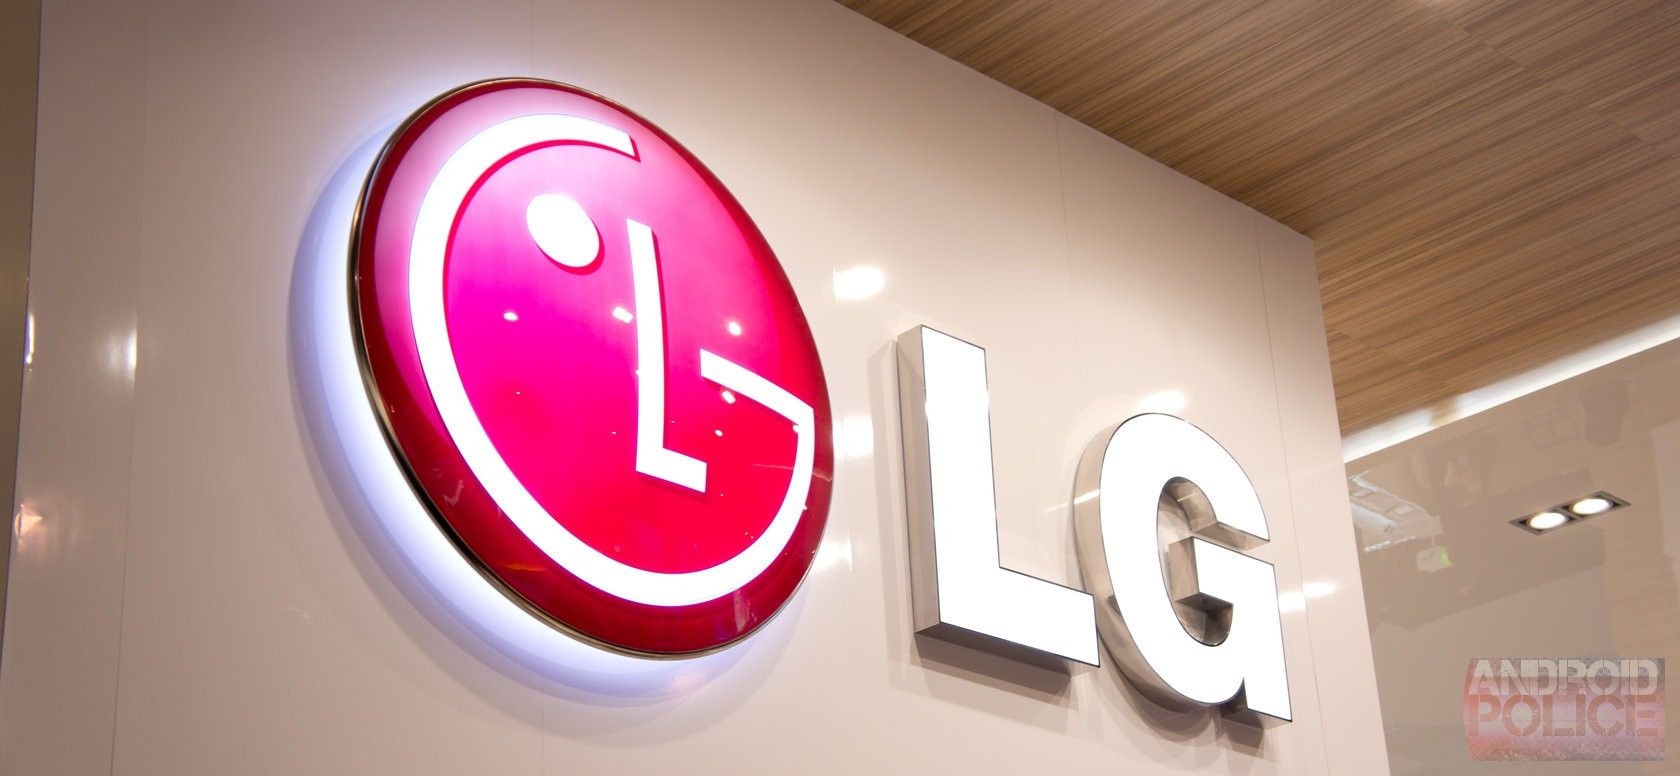 LG también planea cambiar de plástico a metal, G4 Note puede tener una carcasa de metal